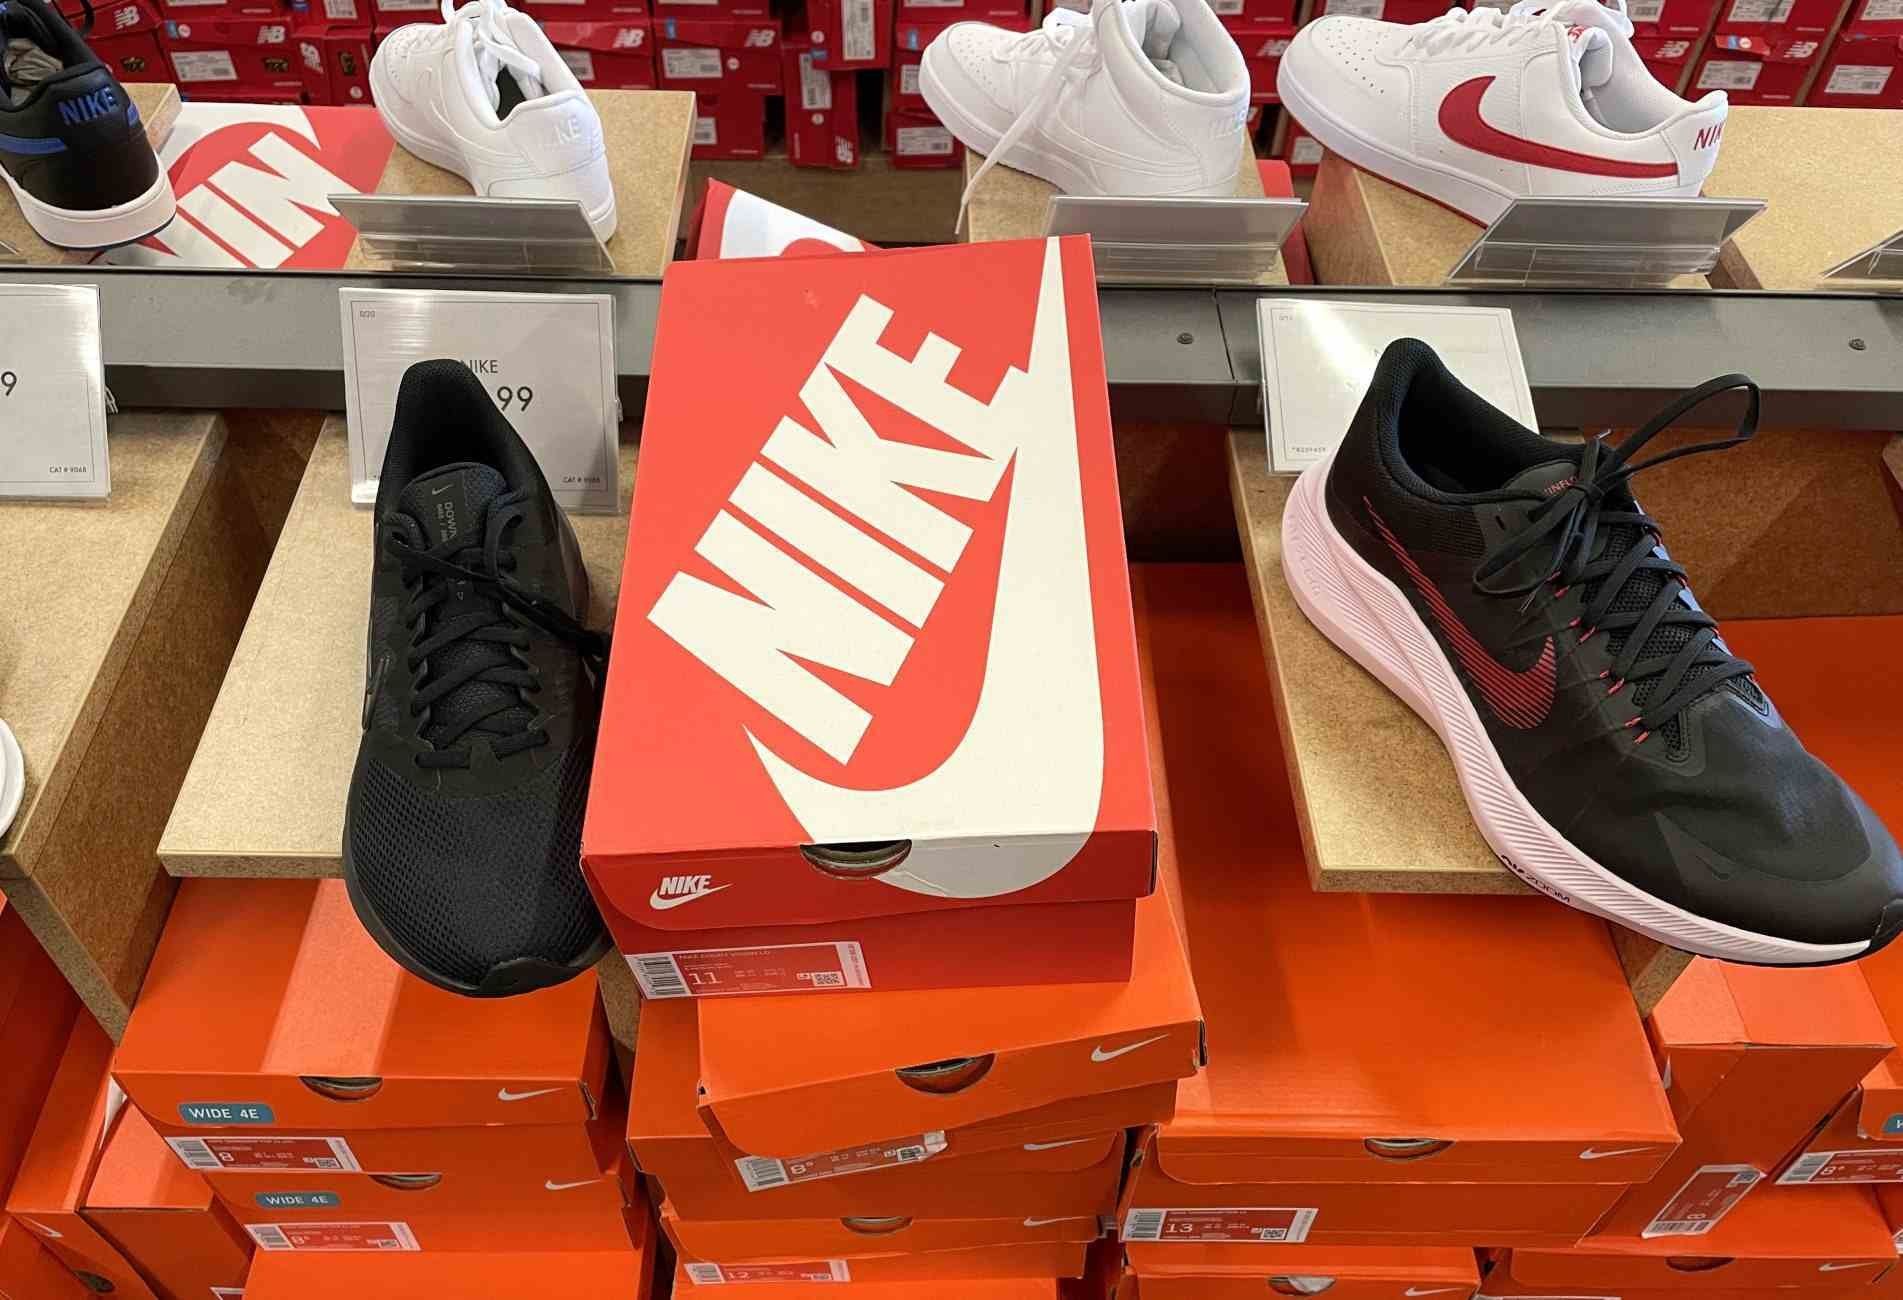 Lockdown rígido e prolongado adotado pelo Vietnã causou escassez de produtos entre marcas globais como Nike